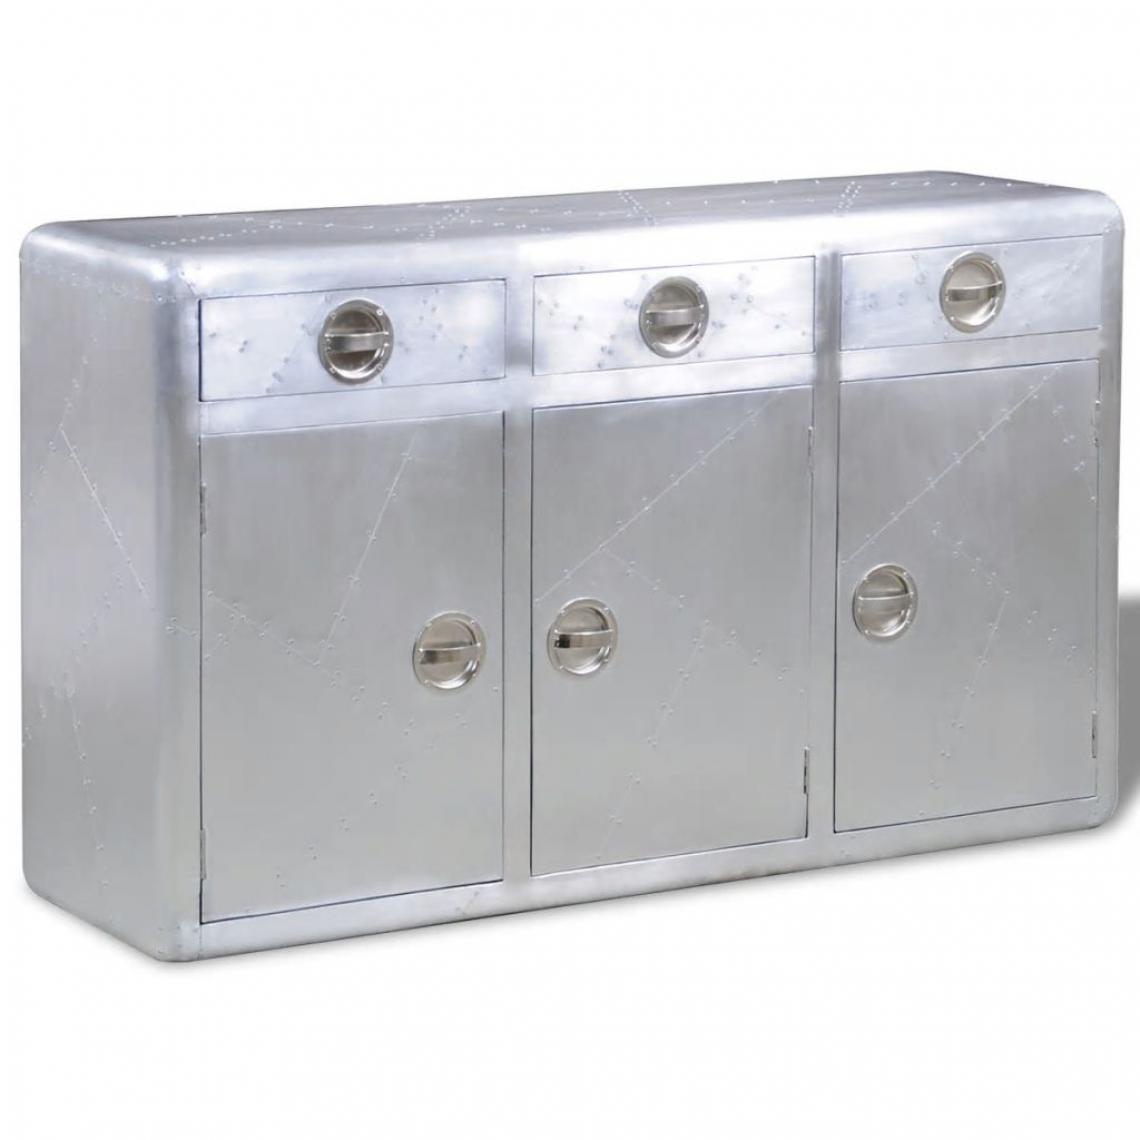 Helloshop26 - Buffet bahut armoire console meuble de rangement avec 3 tiroirs style vintage aluminium gris 4402076 - Consoles